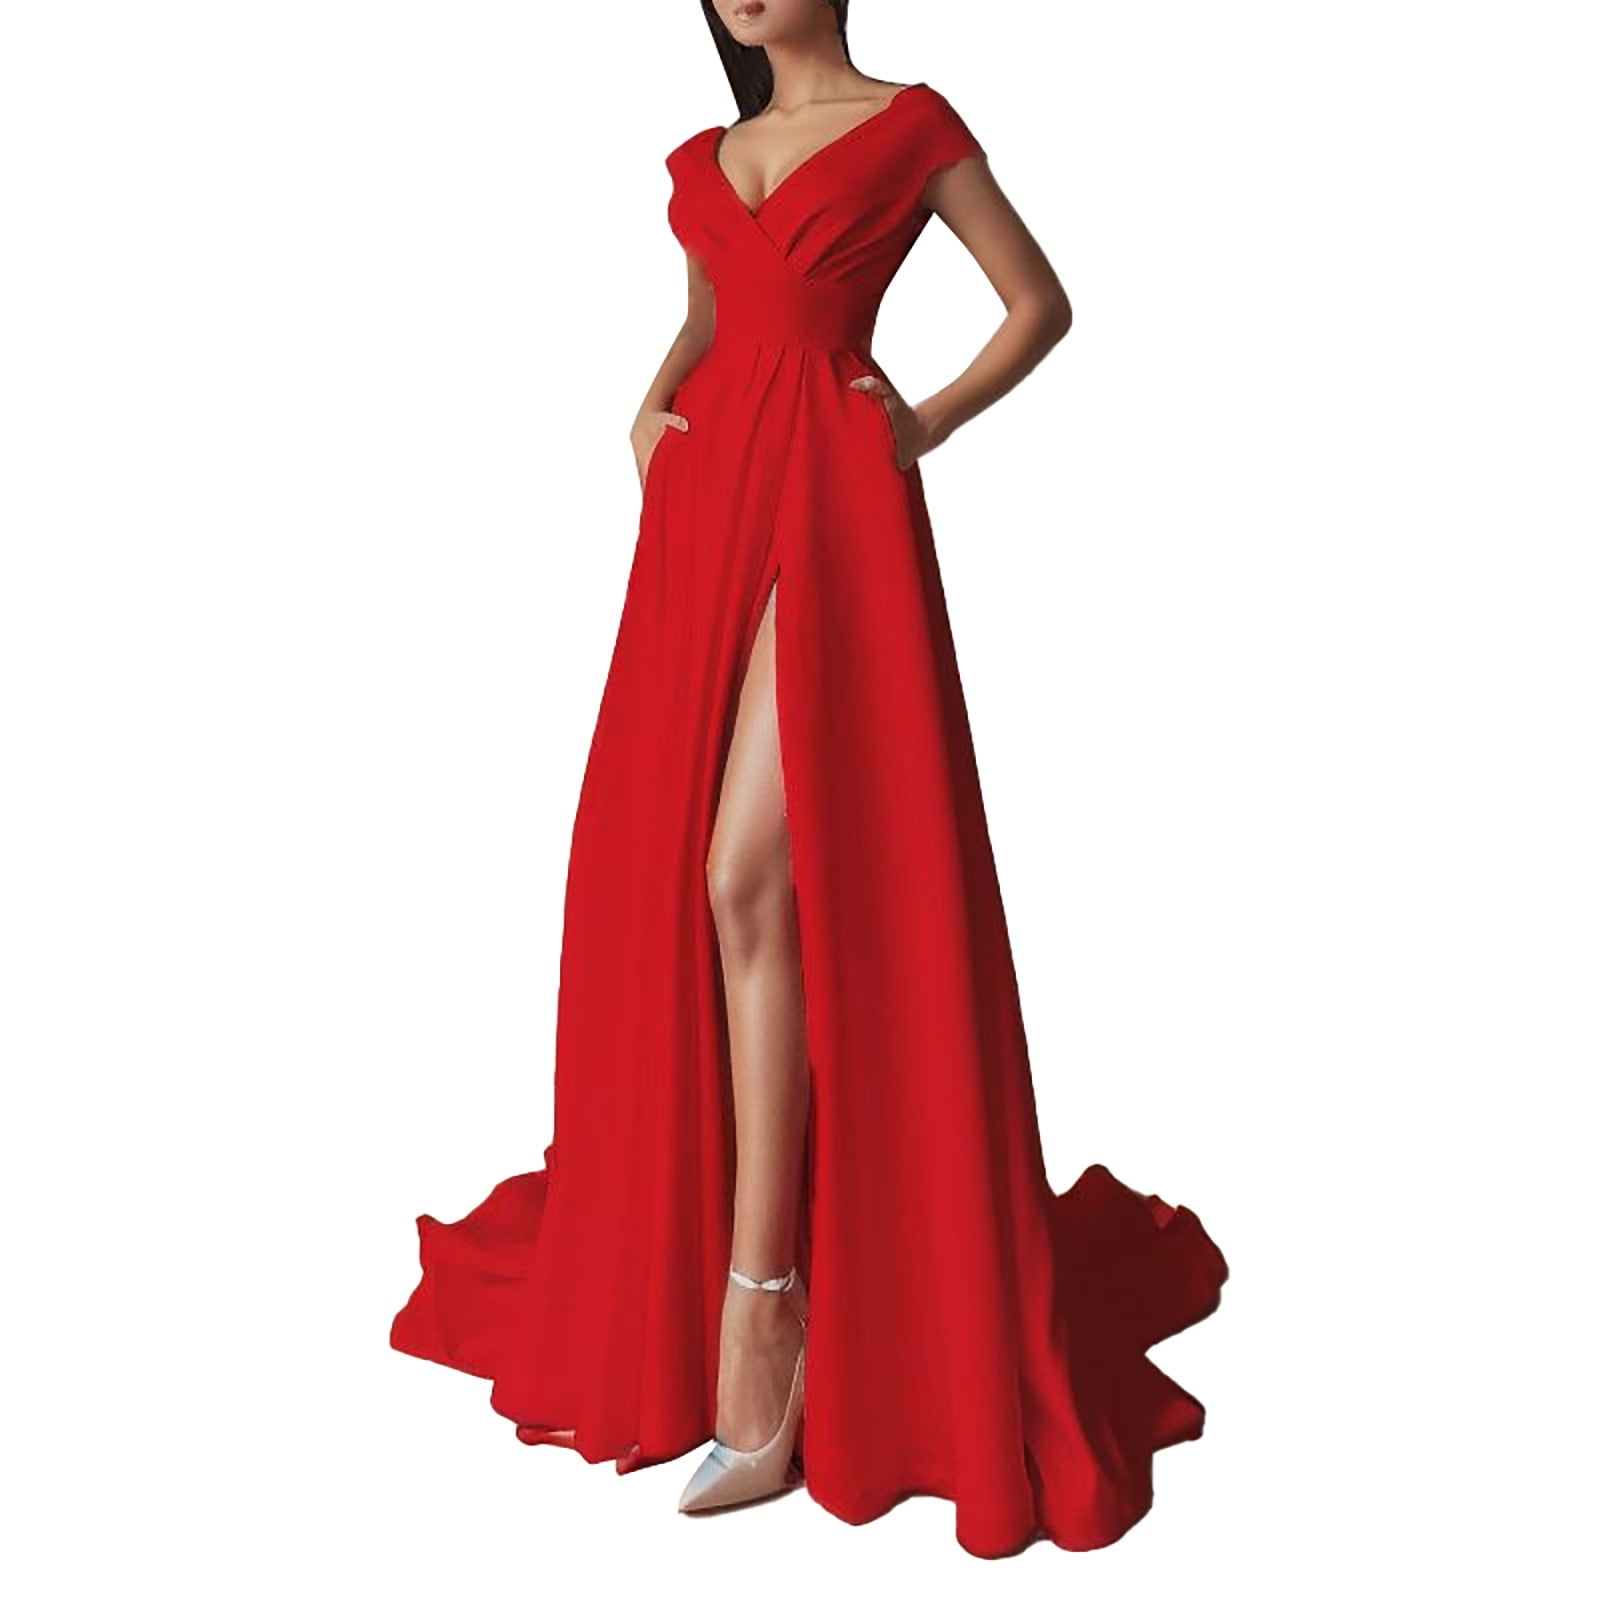 PMUYBHF Dress for Women Wedding Formal Dresses for Women Short Sleeve  Women's off Shoulder Style Ruffled Hem Red/Black/White High Waist Solid  Color Elegant Work Dress 